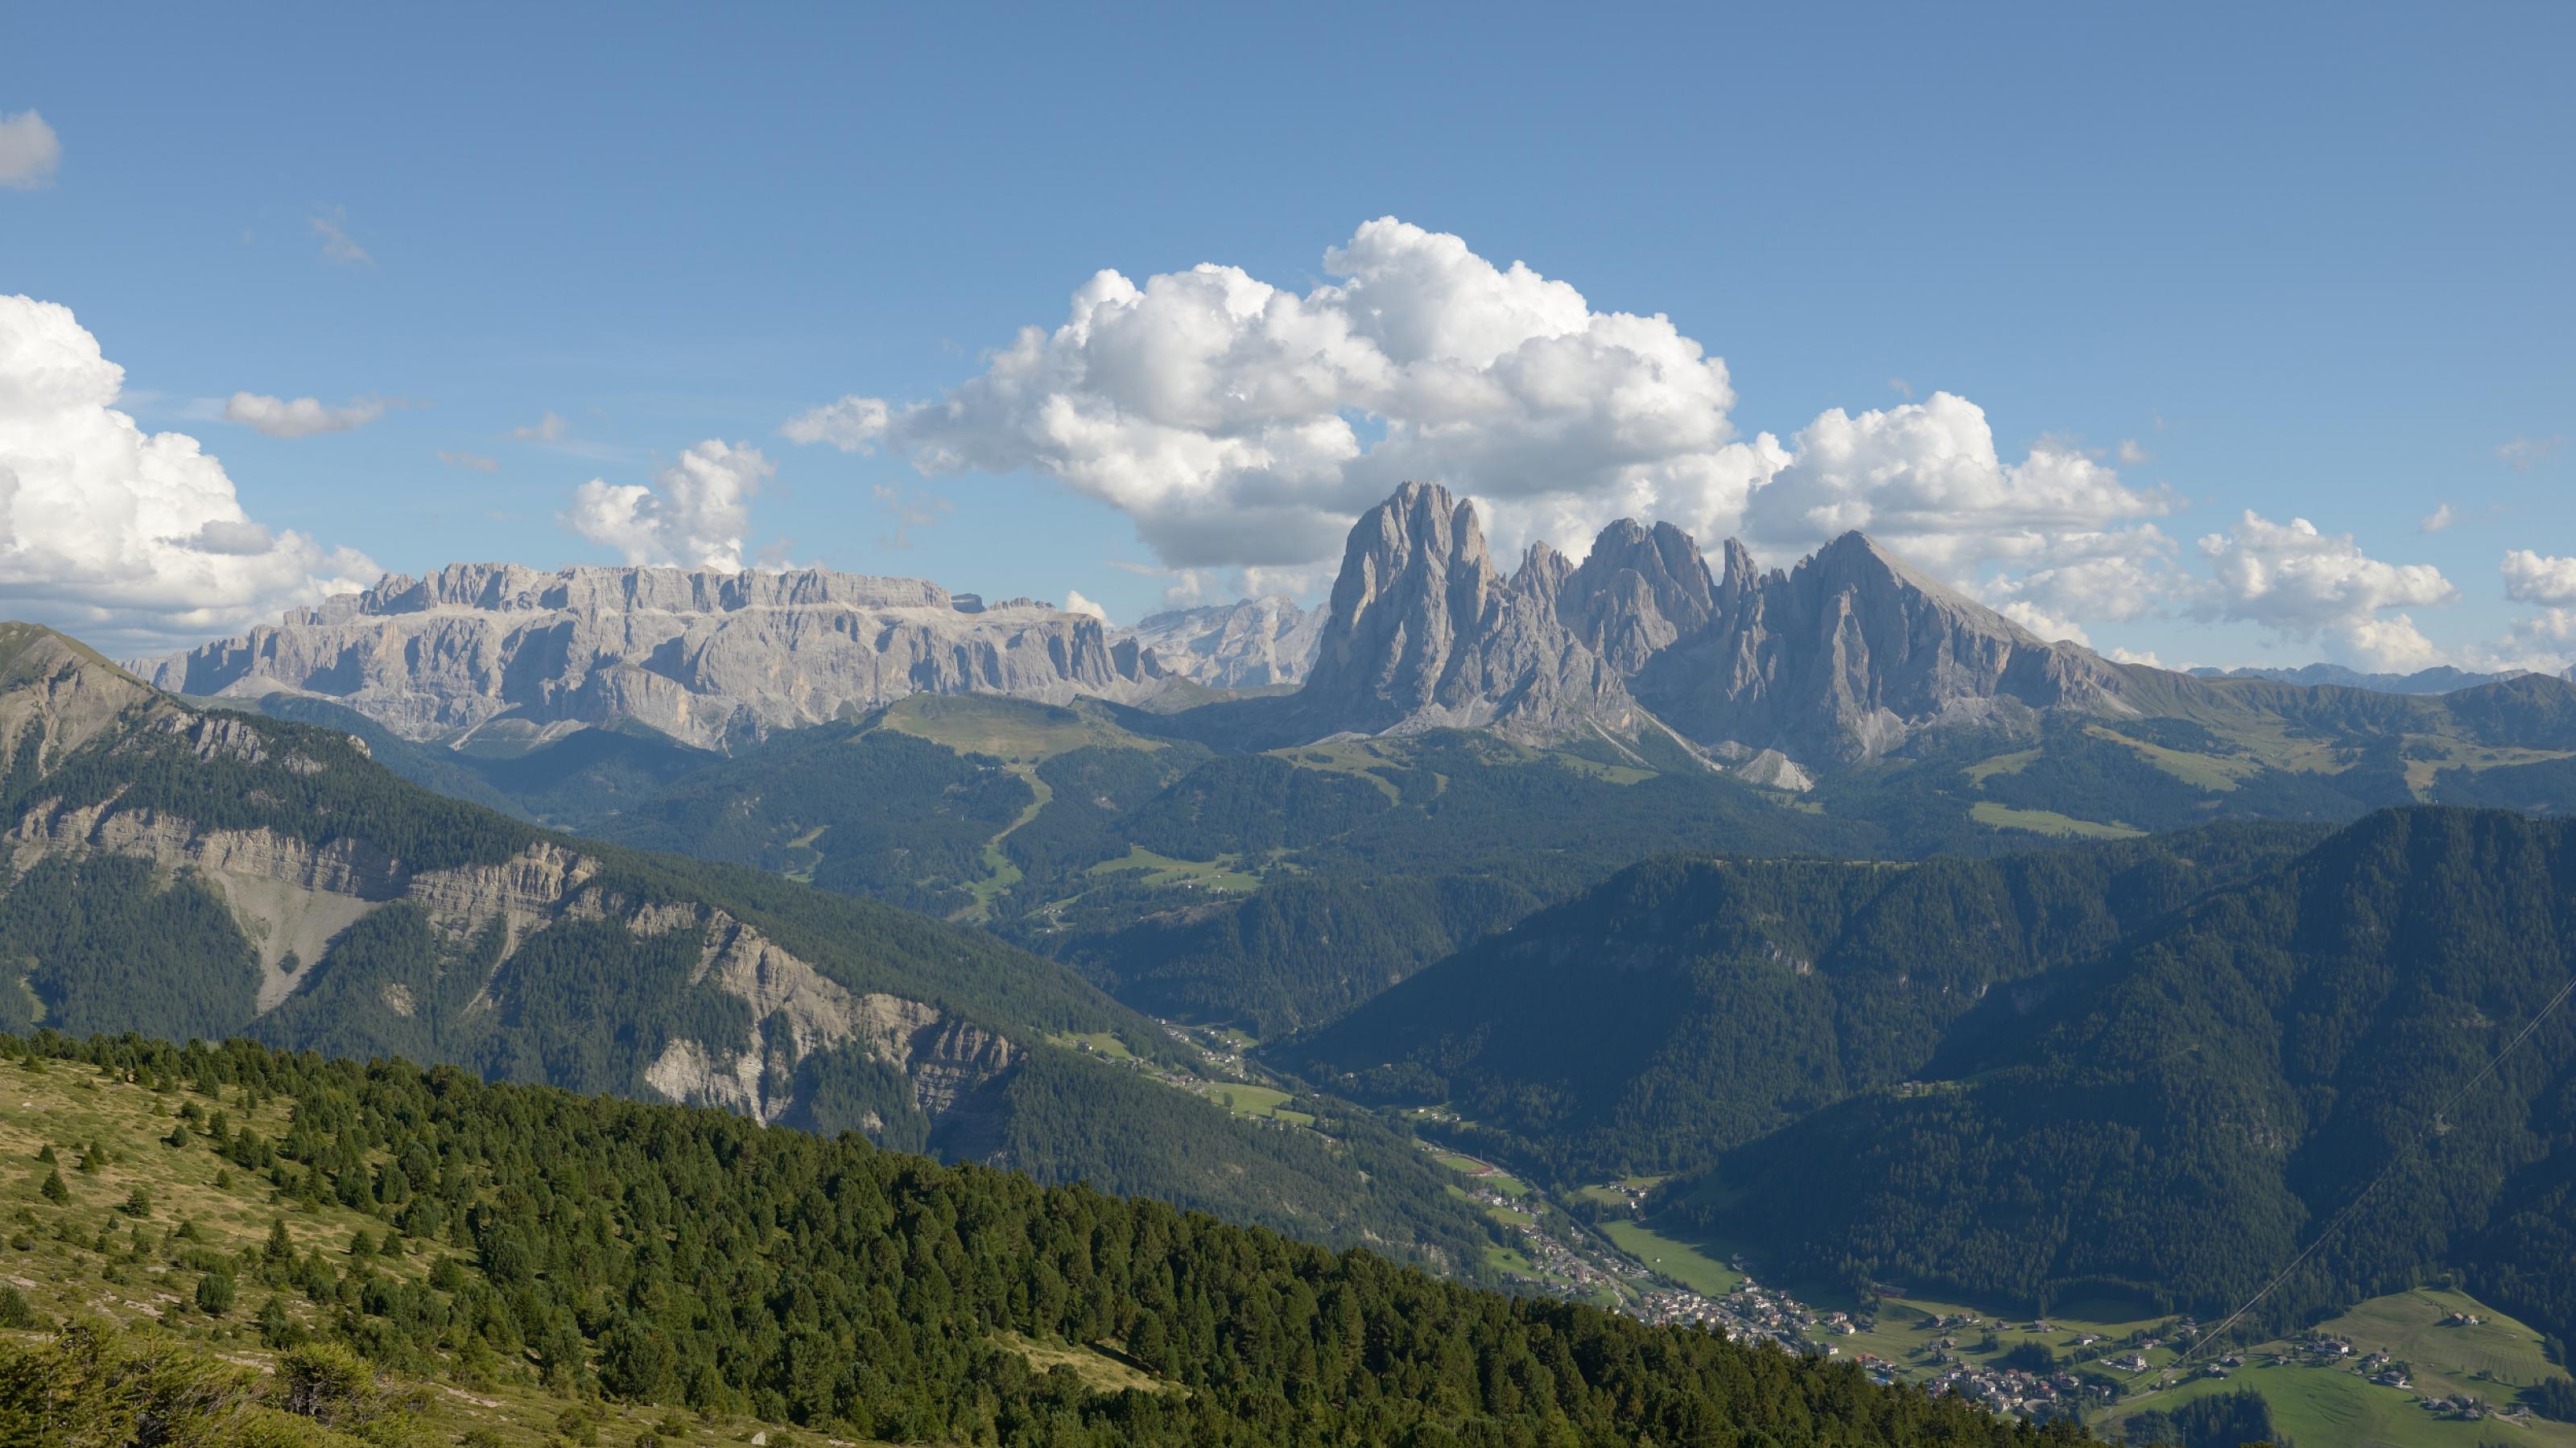 Ein Bergpanorama, in der Ferne schroff aufragende Dolomitenberge unter weißen Wölkchen, im Vordergrund Wälder und Wiesen